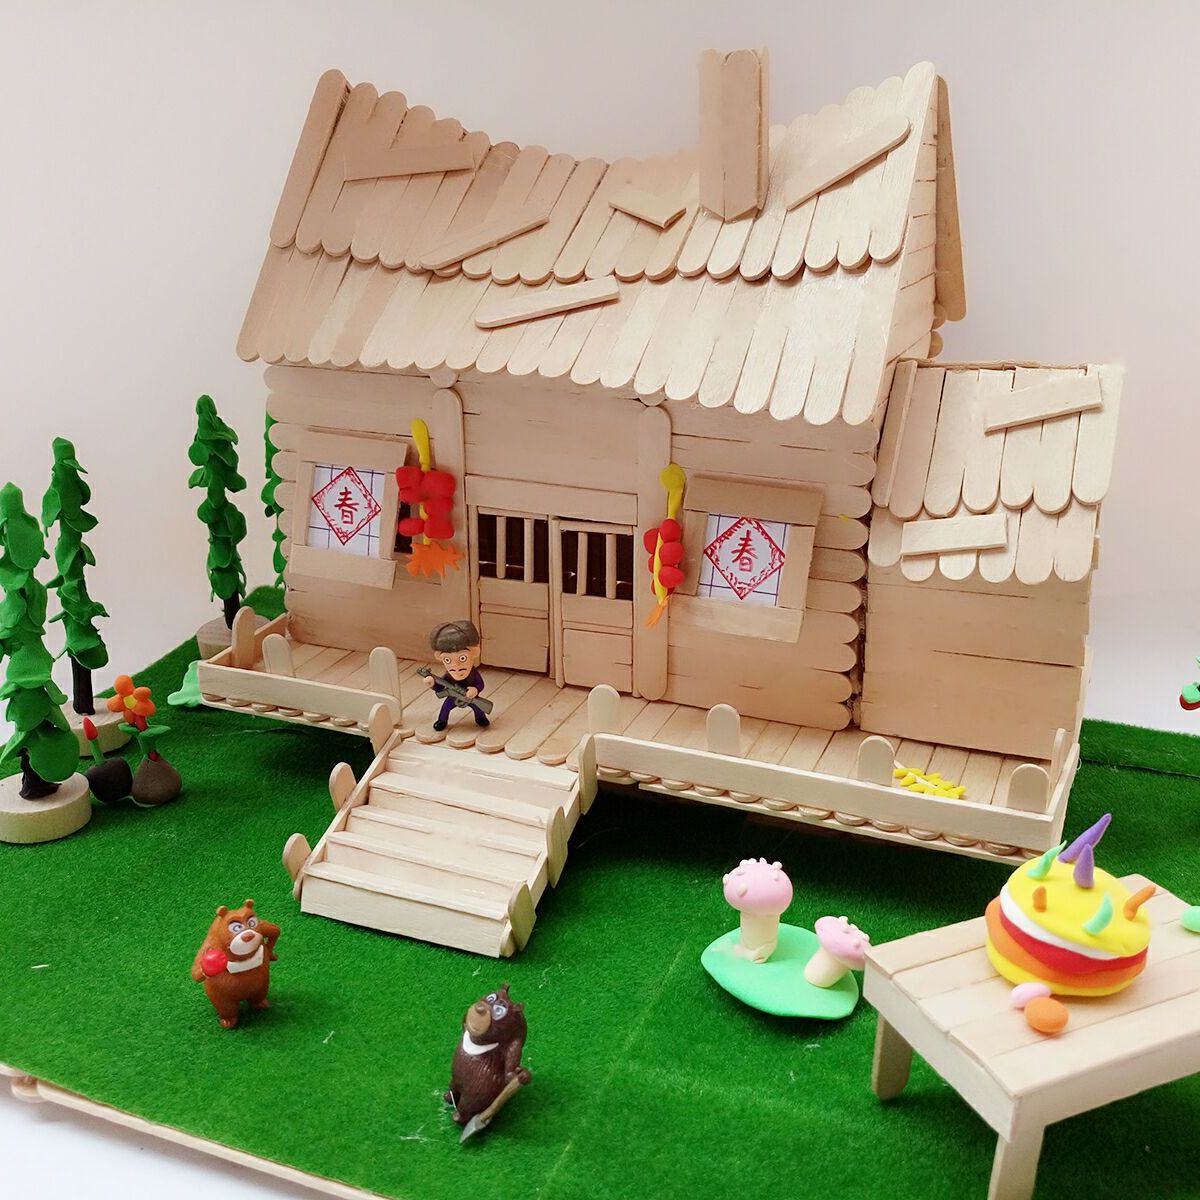 冰棒棍手工制作diy房子材料儿童建筑模型雪糕棒光头强木屋套装手